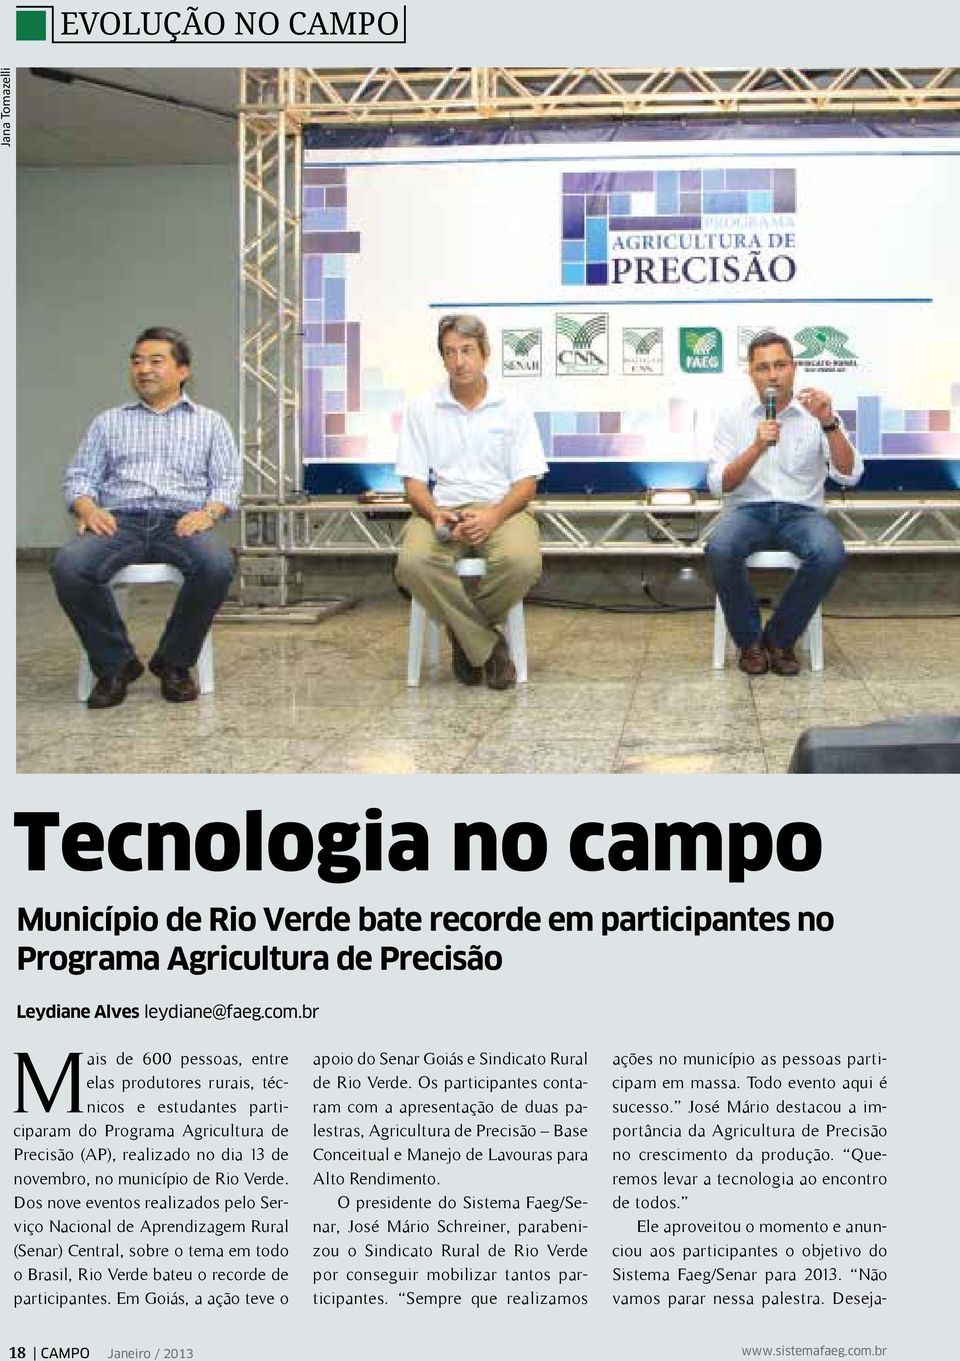 Dos nove eventos realizados pelo Serviço Nacional de Aprendizagem Rural (Senar) Central, sobre o tema em todo o Brasil, Rio Verde bateu o recorde de participantes.